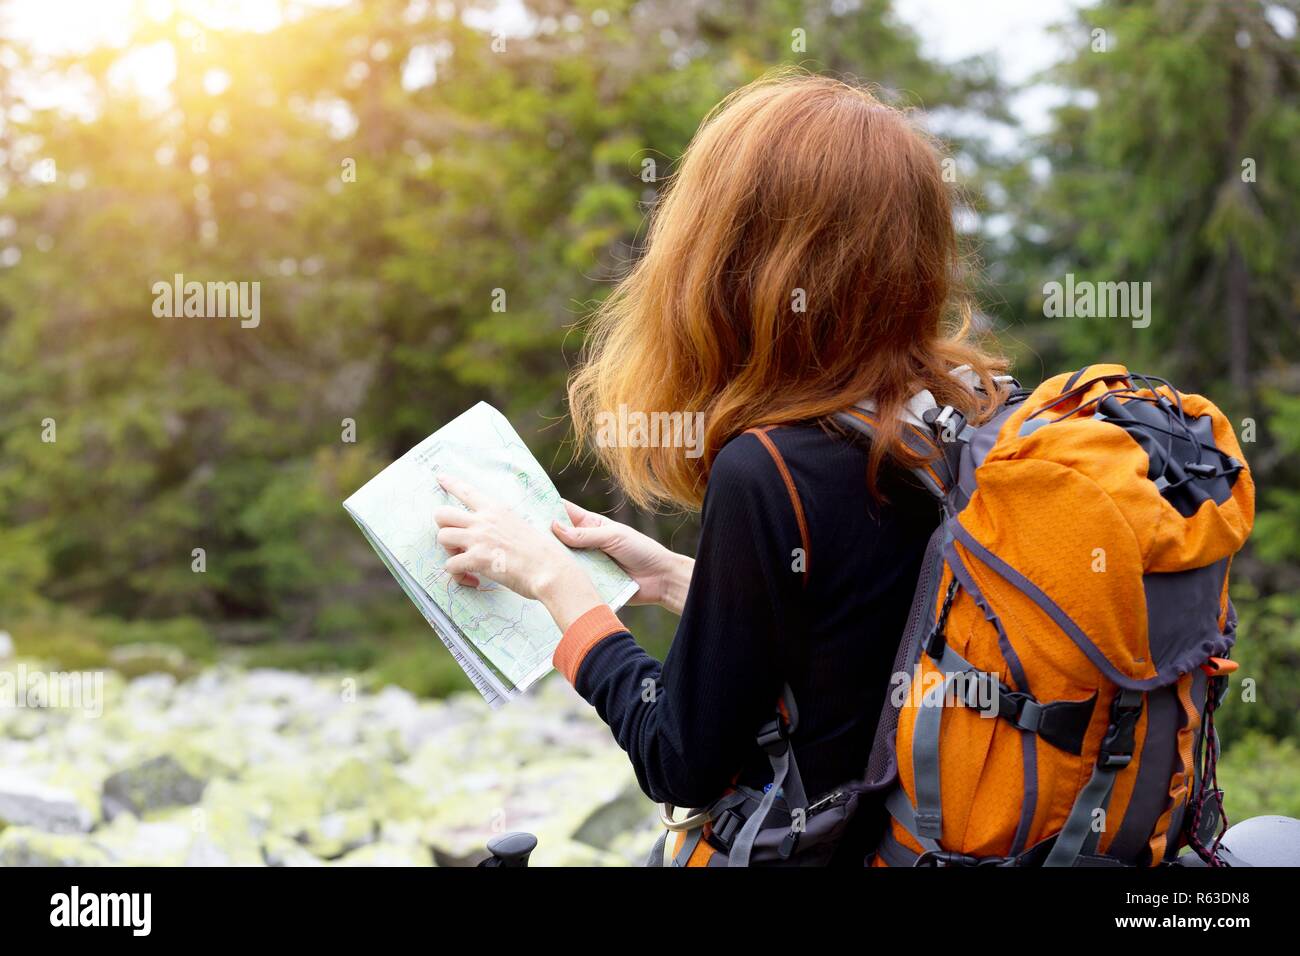 Camping. girl randonneur avec une carte sur les Carpates, montagnes. gorgany, Ukraine. Banque D'Images